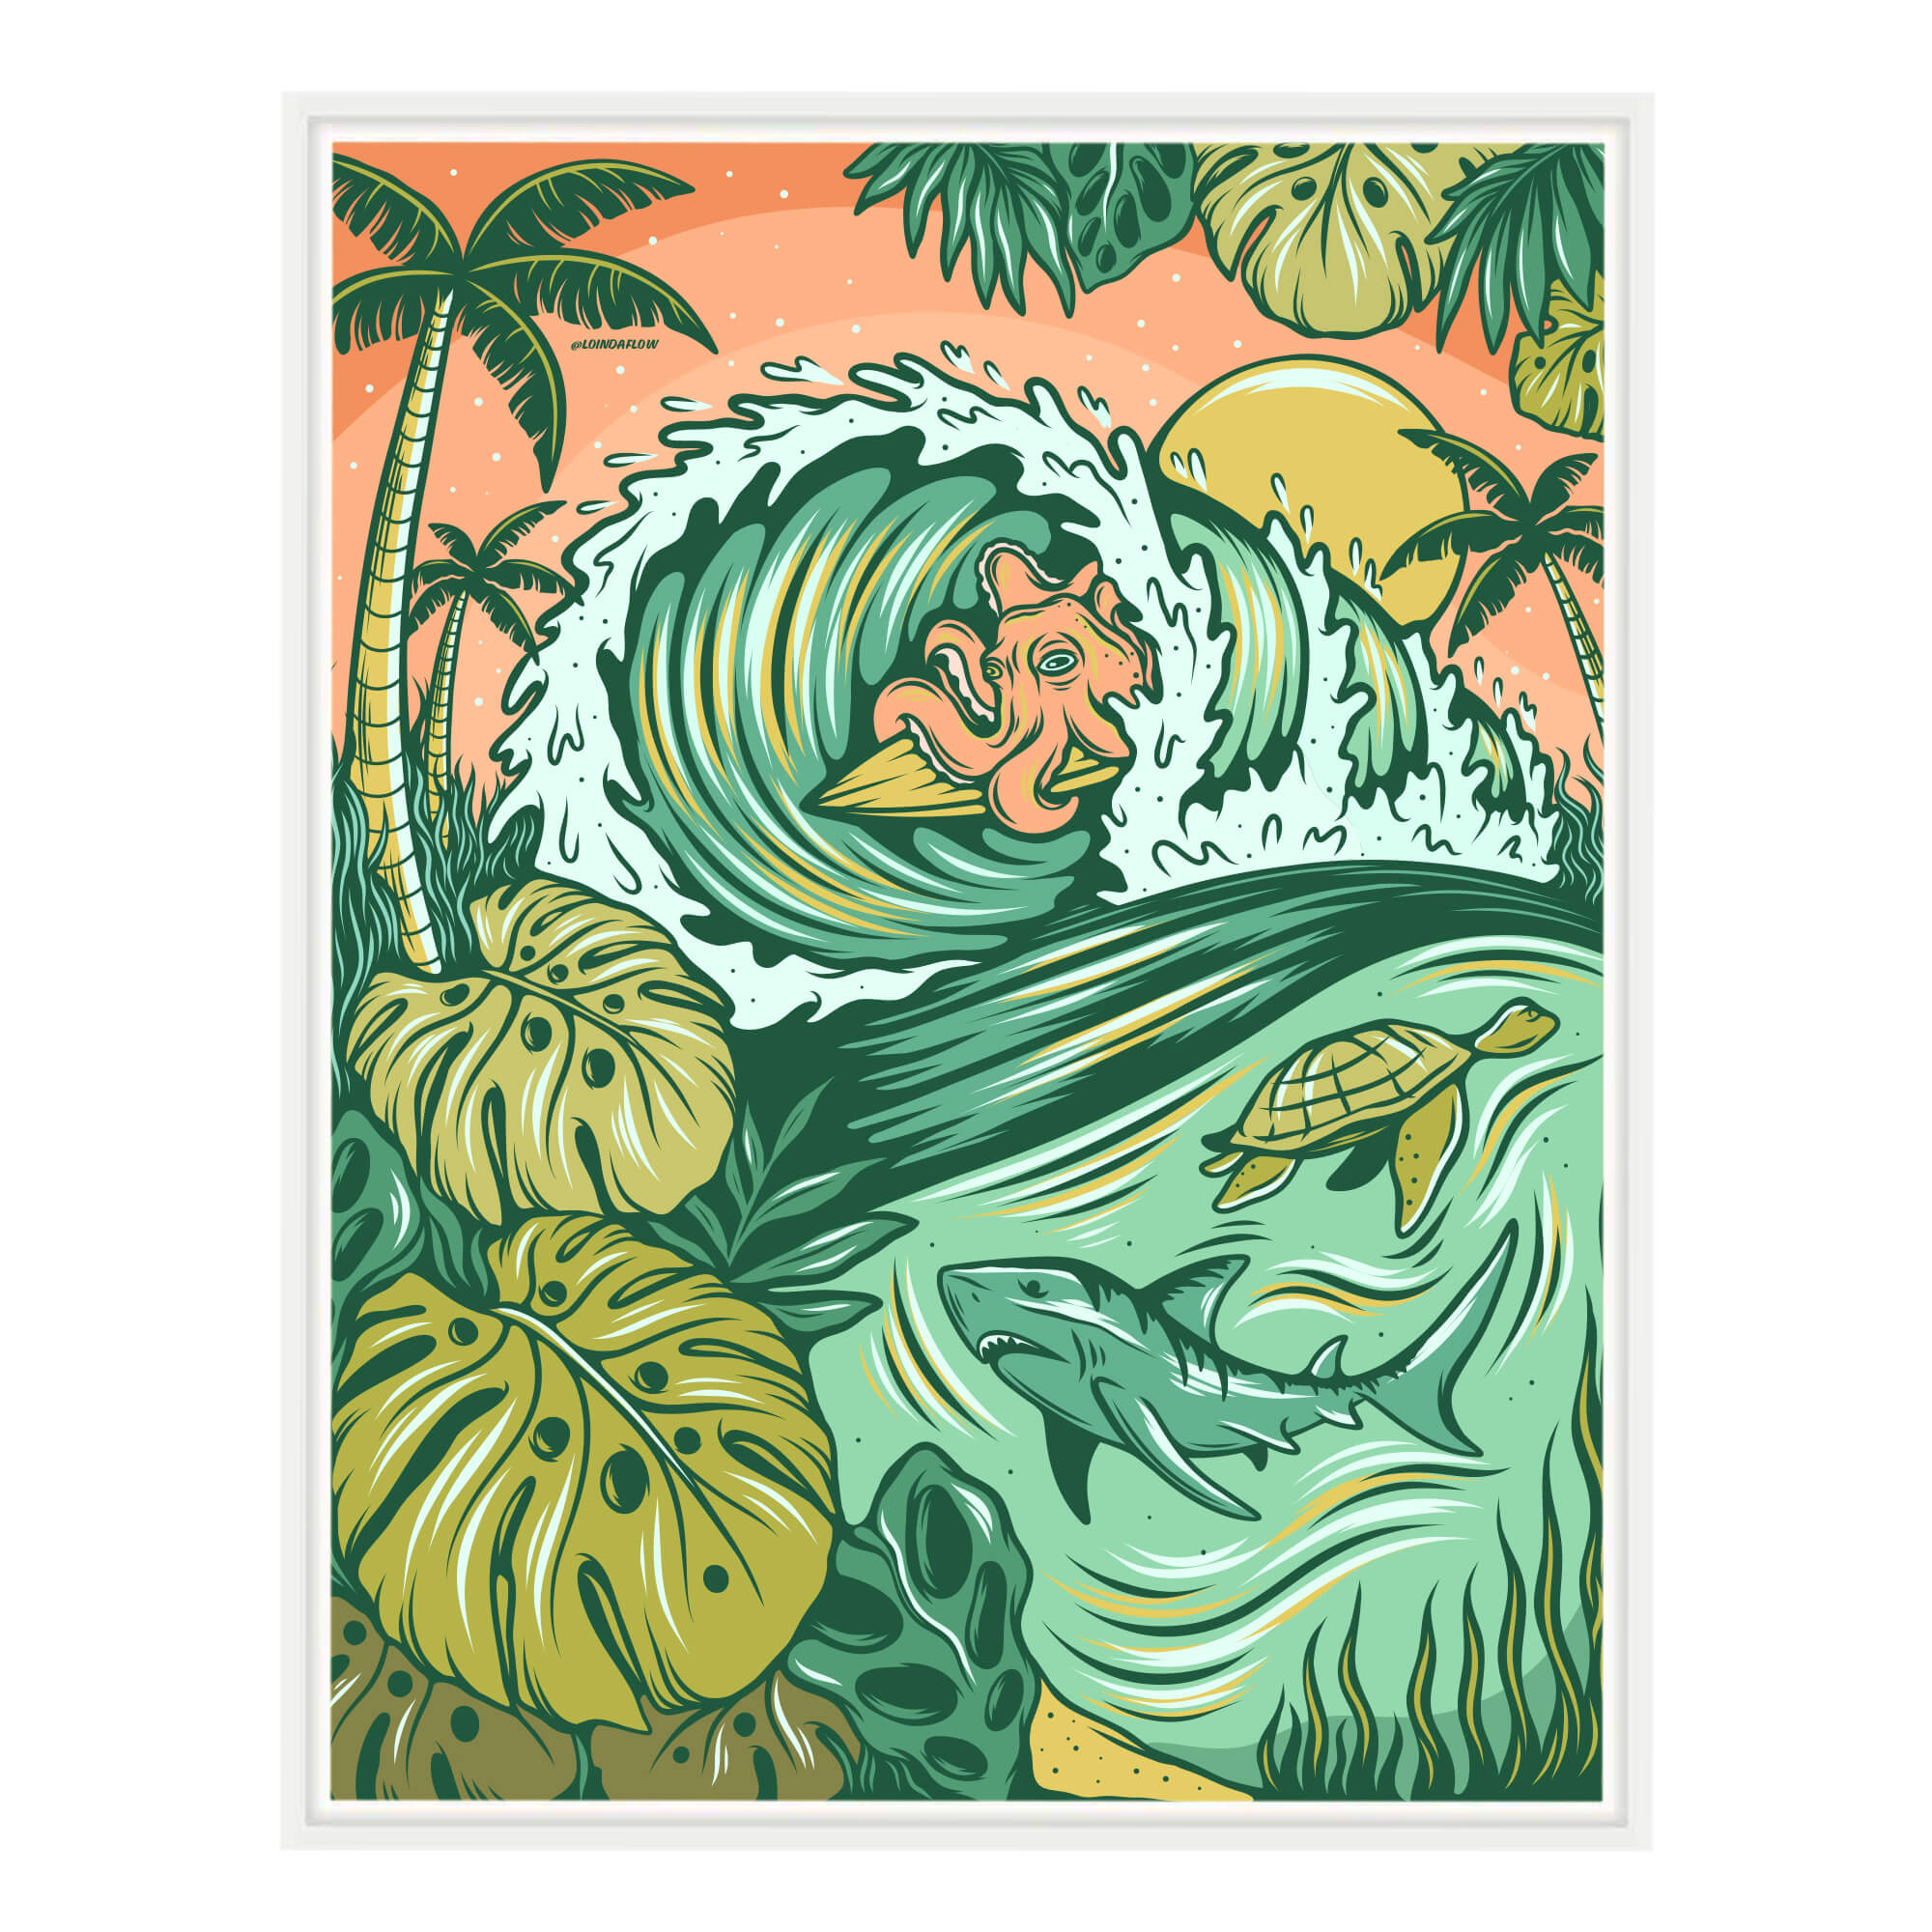 Canvas giclée art print featuring an octopus riding a surfboard in a barrel by Hawaii artist Laihha Organna